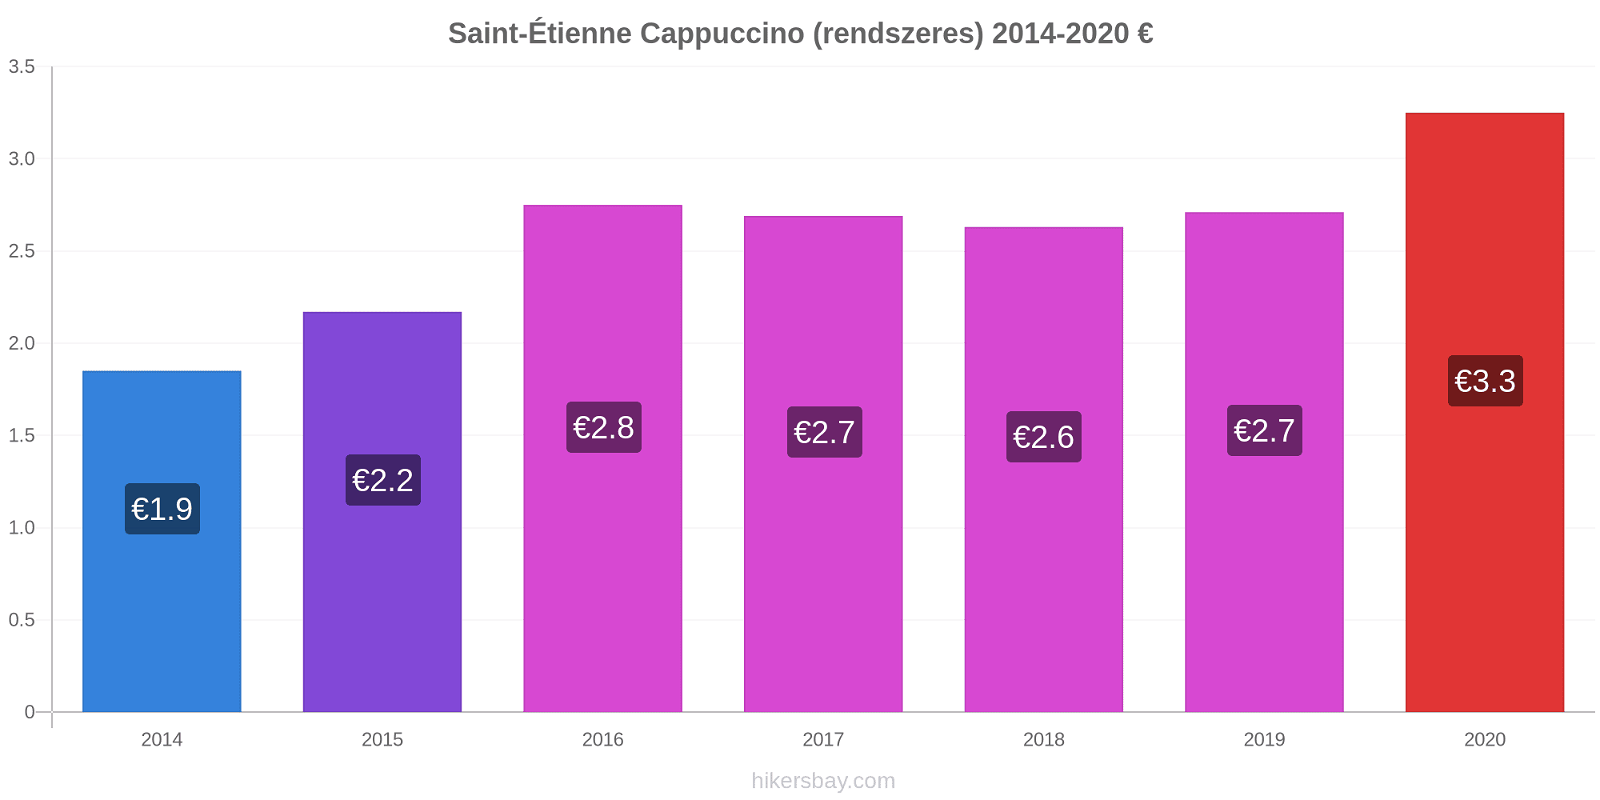 Saint-Étienne árváltozások Cappuccino (rendszeres) hikersbay.com